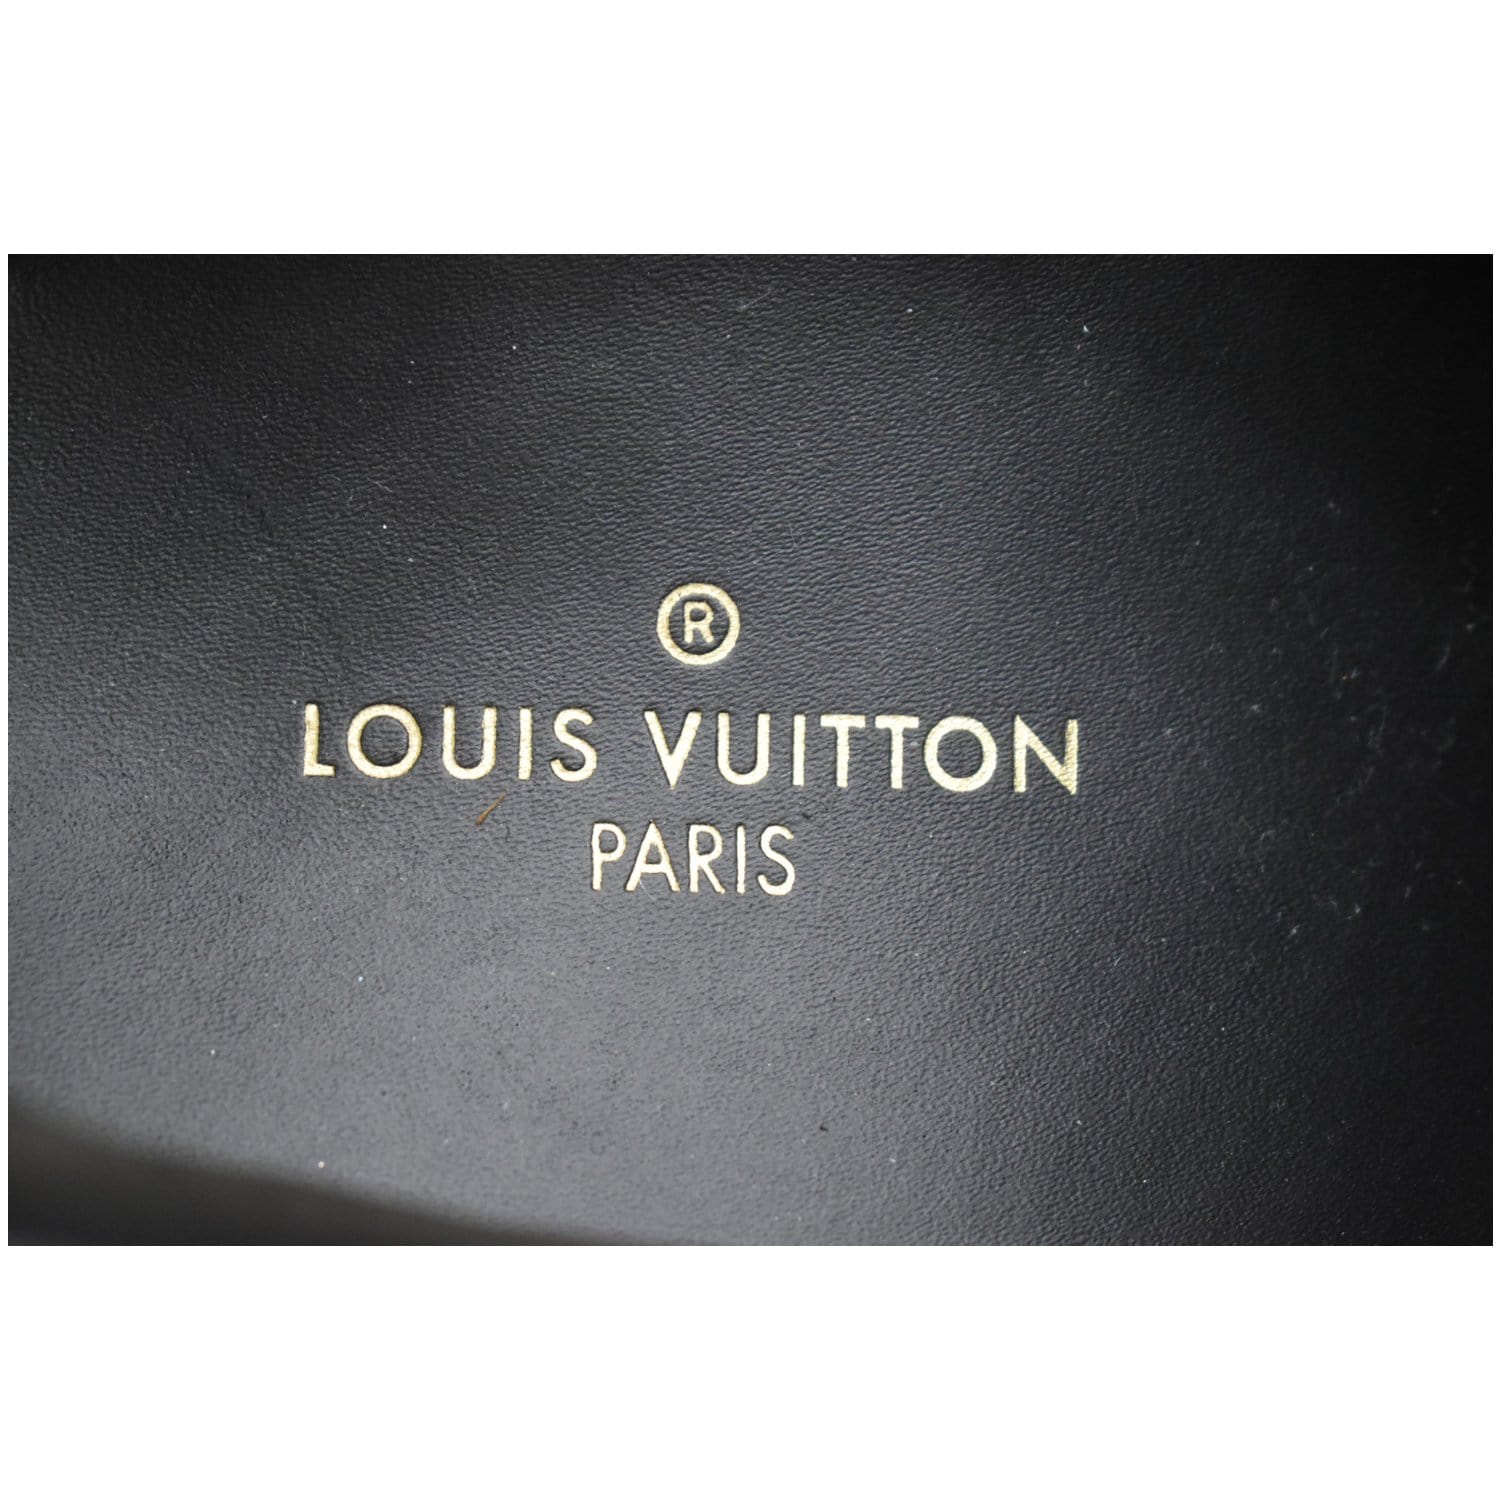 Run away trainers Louis Vuitton Navy size 39.5 EU in Suede - 31475808